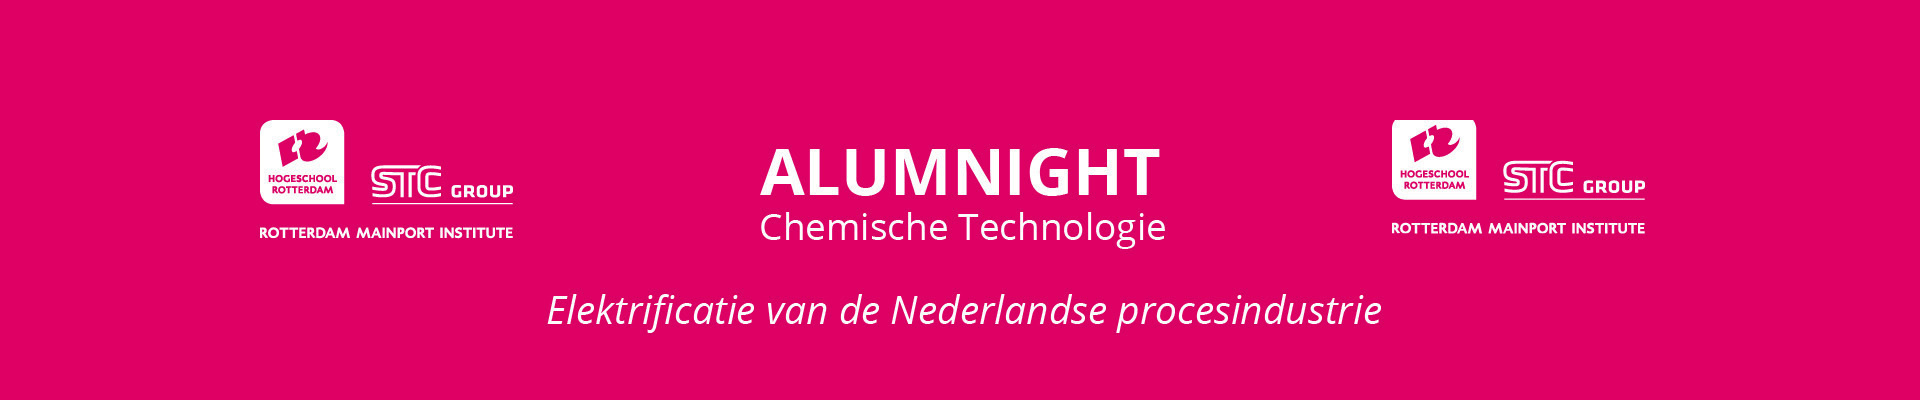 Alumnight Chemische Technologie